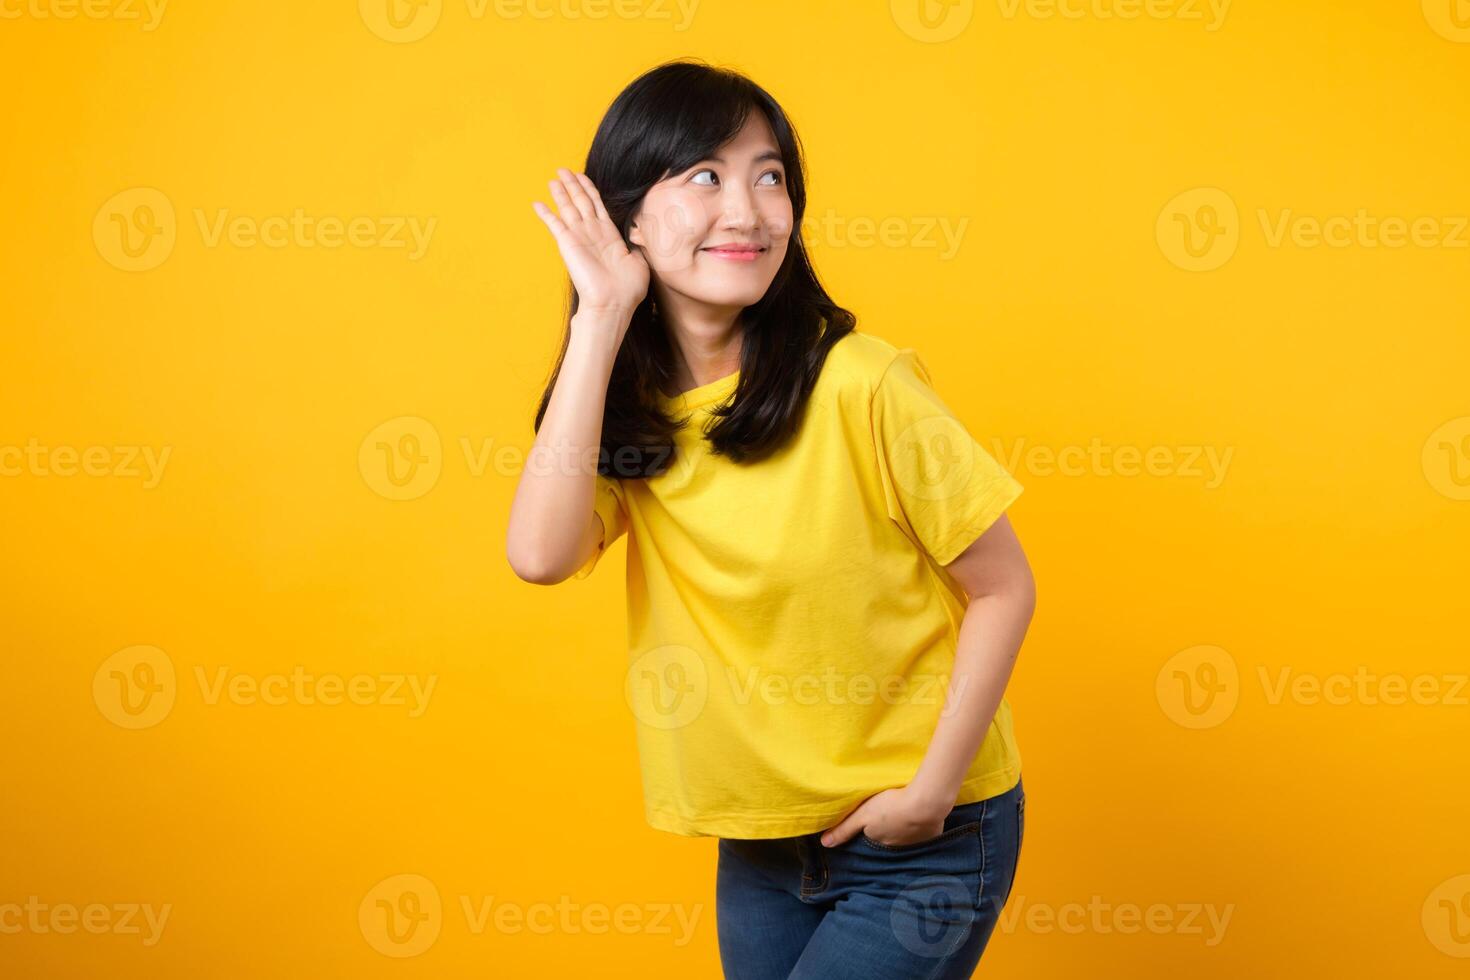 fånga uppmärksamhet porträtt av ung asiatisk kvinna. bär en gul t-shirt och denim jeans, lutar i till få höra och lyssna, frammanande nyfikenhet och intrig. fånga uppmärksamheten kampanjer och rabatter. foto